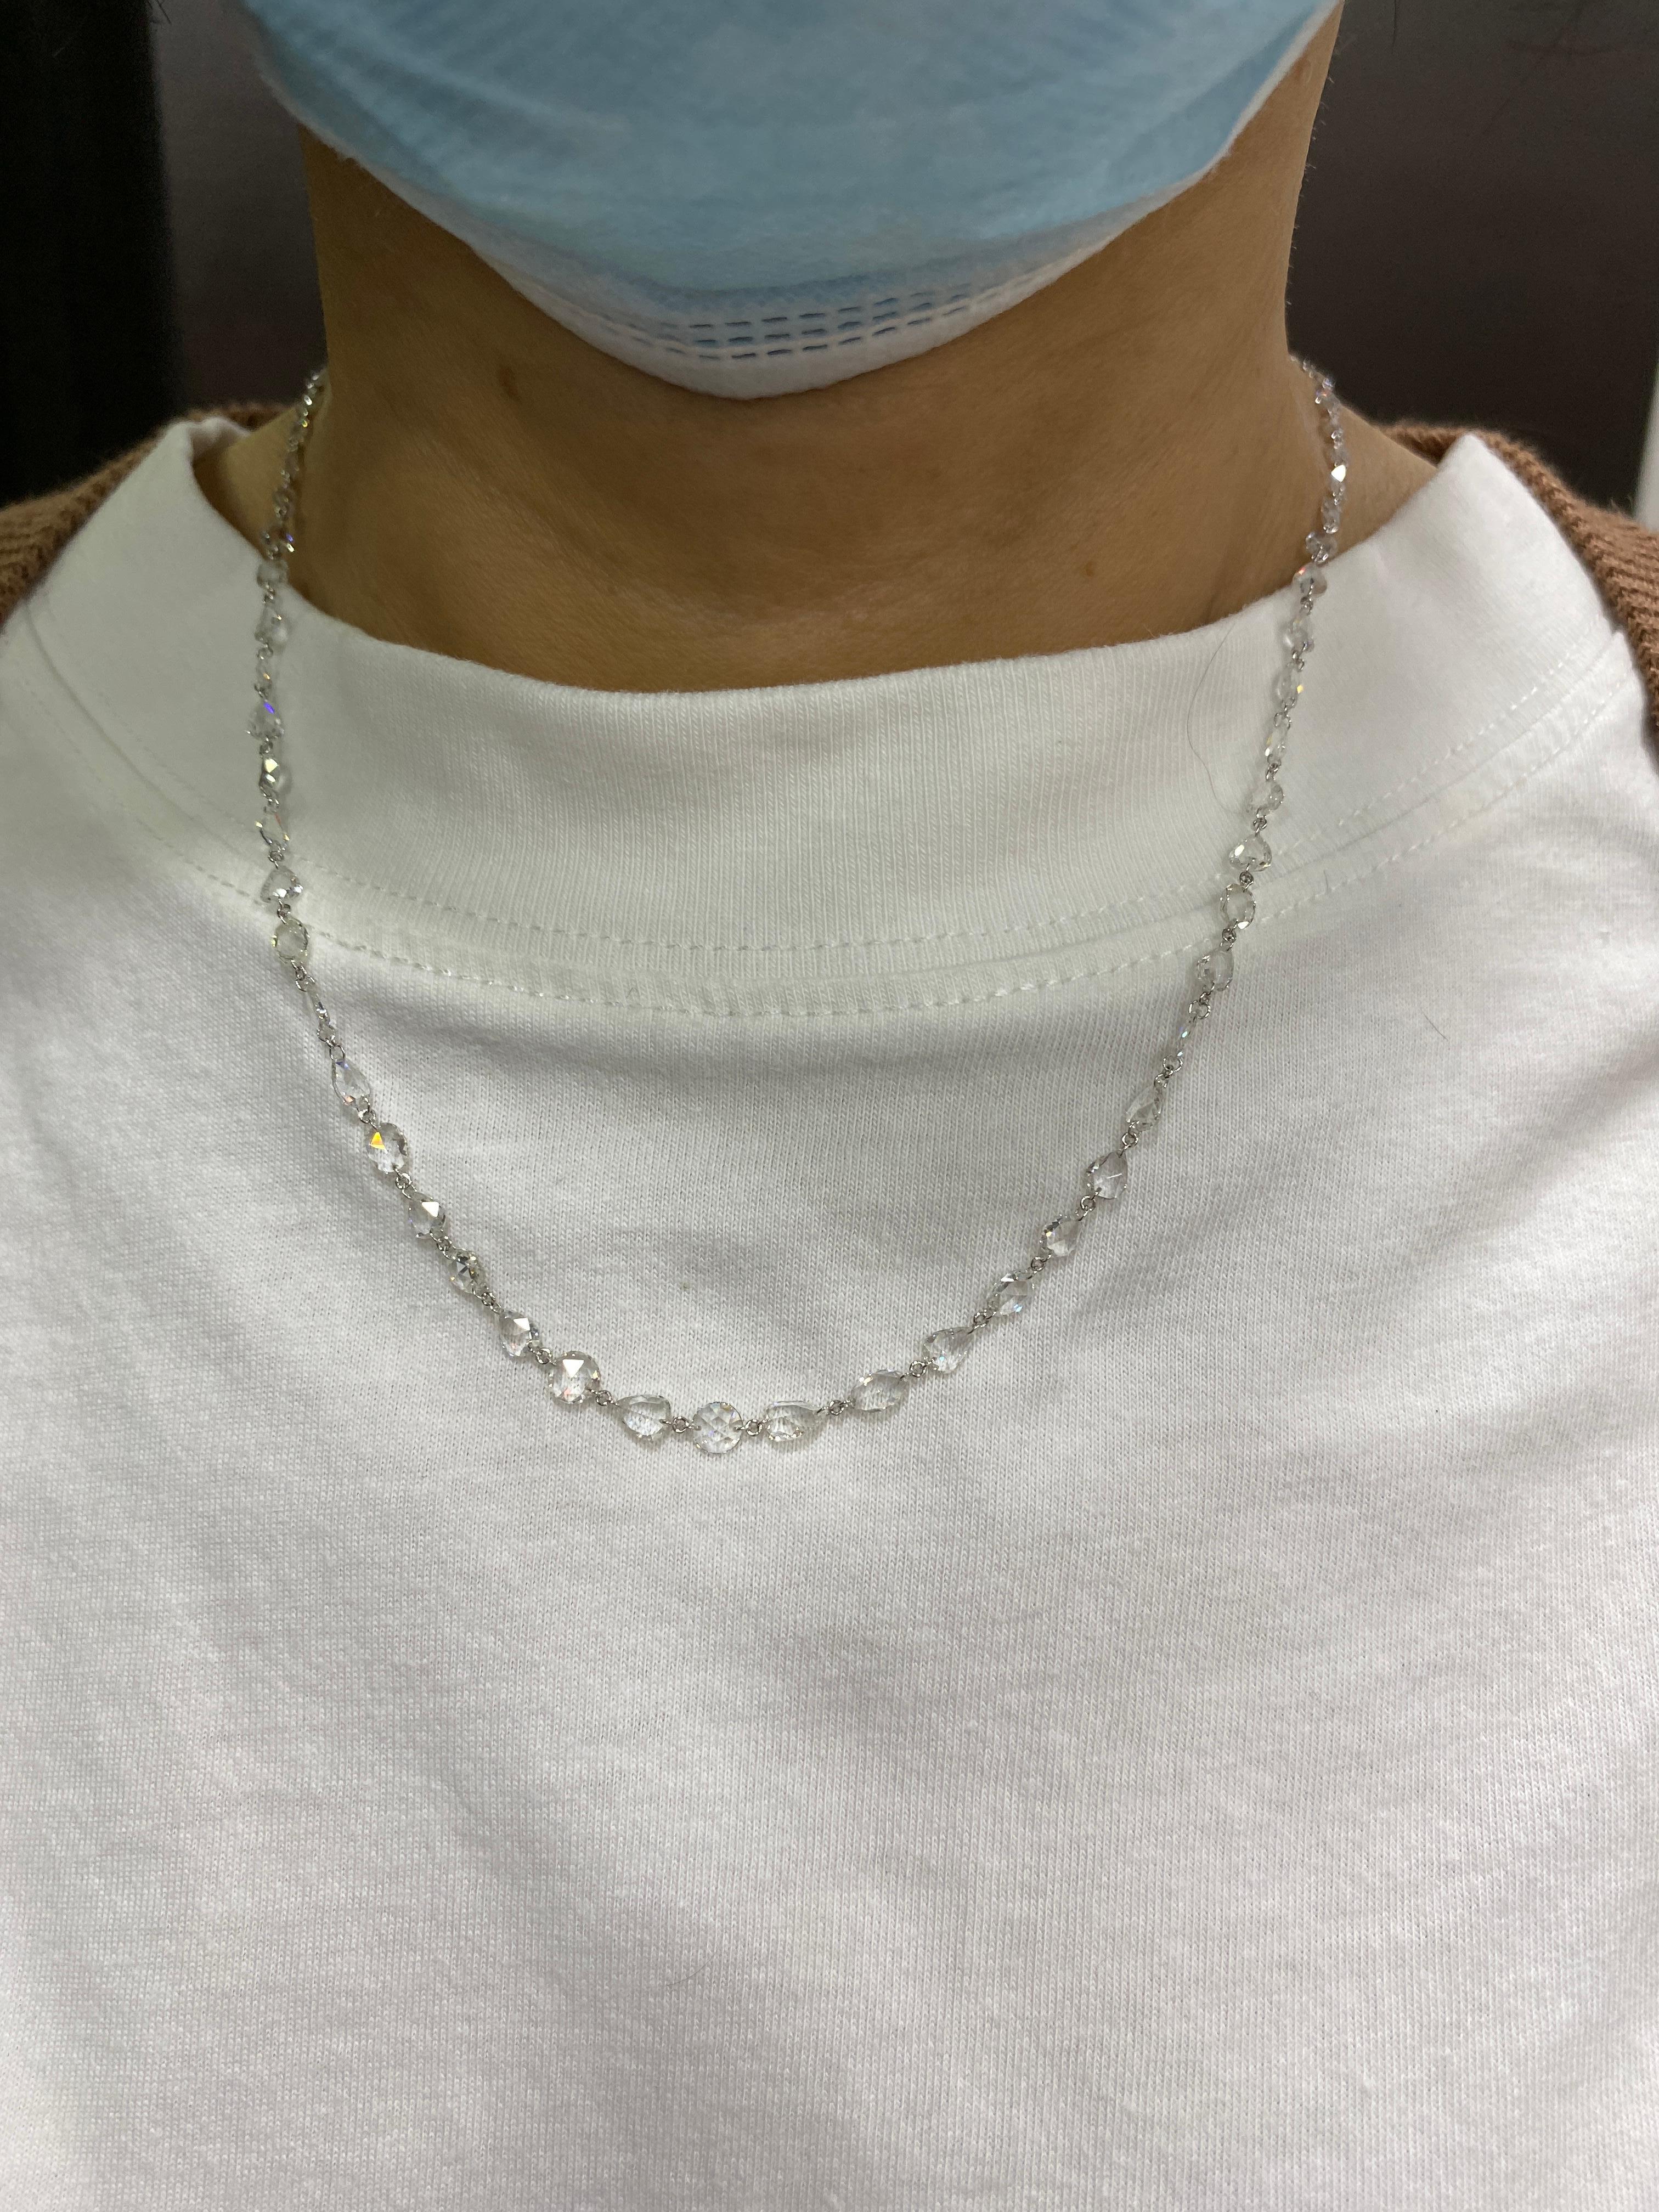 JR 12,19 Karat Weißer Diamant im Rosenschliff Halskette 

Diese Halskette sorgt für einen kompletten Look in sich. Die Schließe ist speziell mit Pave-Diamanten besetzt. Sie kann auch als Lagenkette getragen werden.

Länge der Halskette : 18